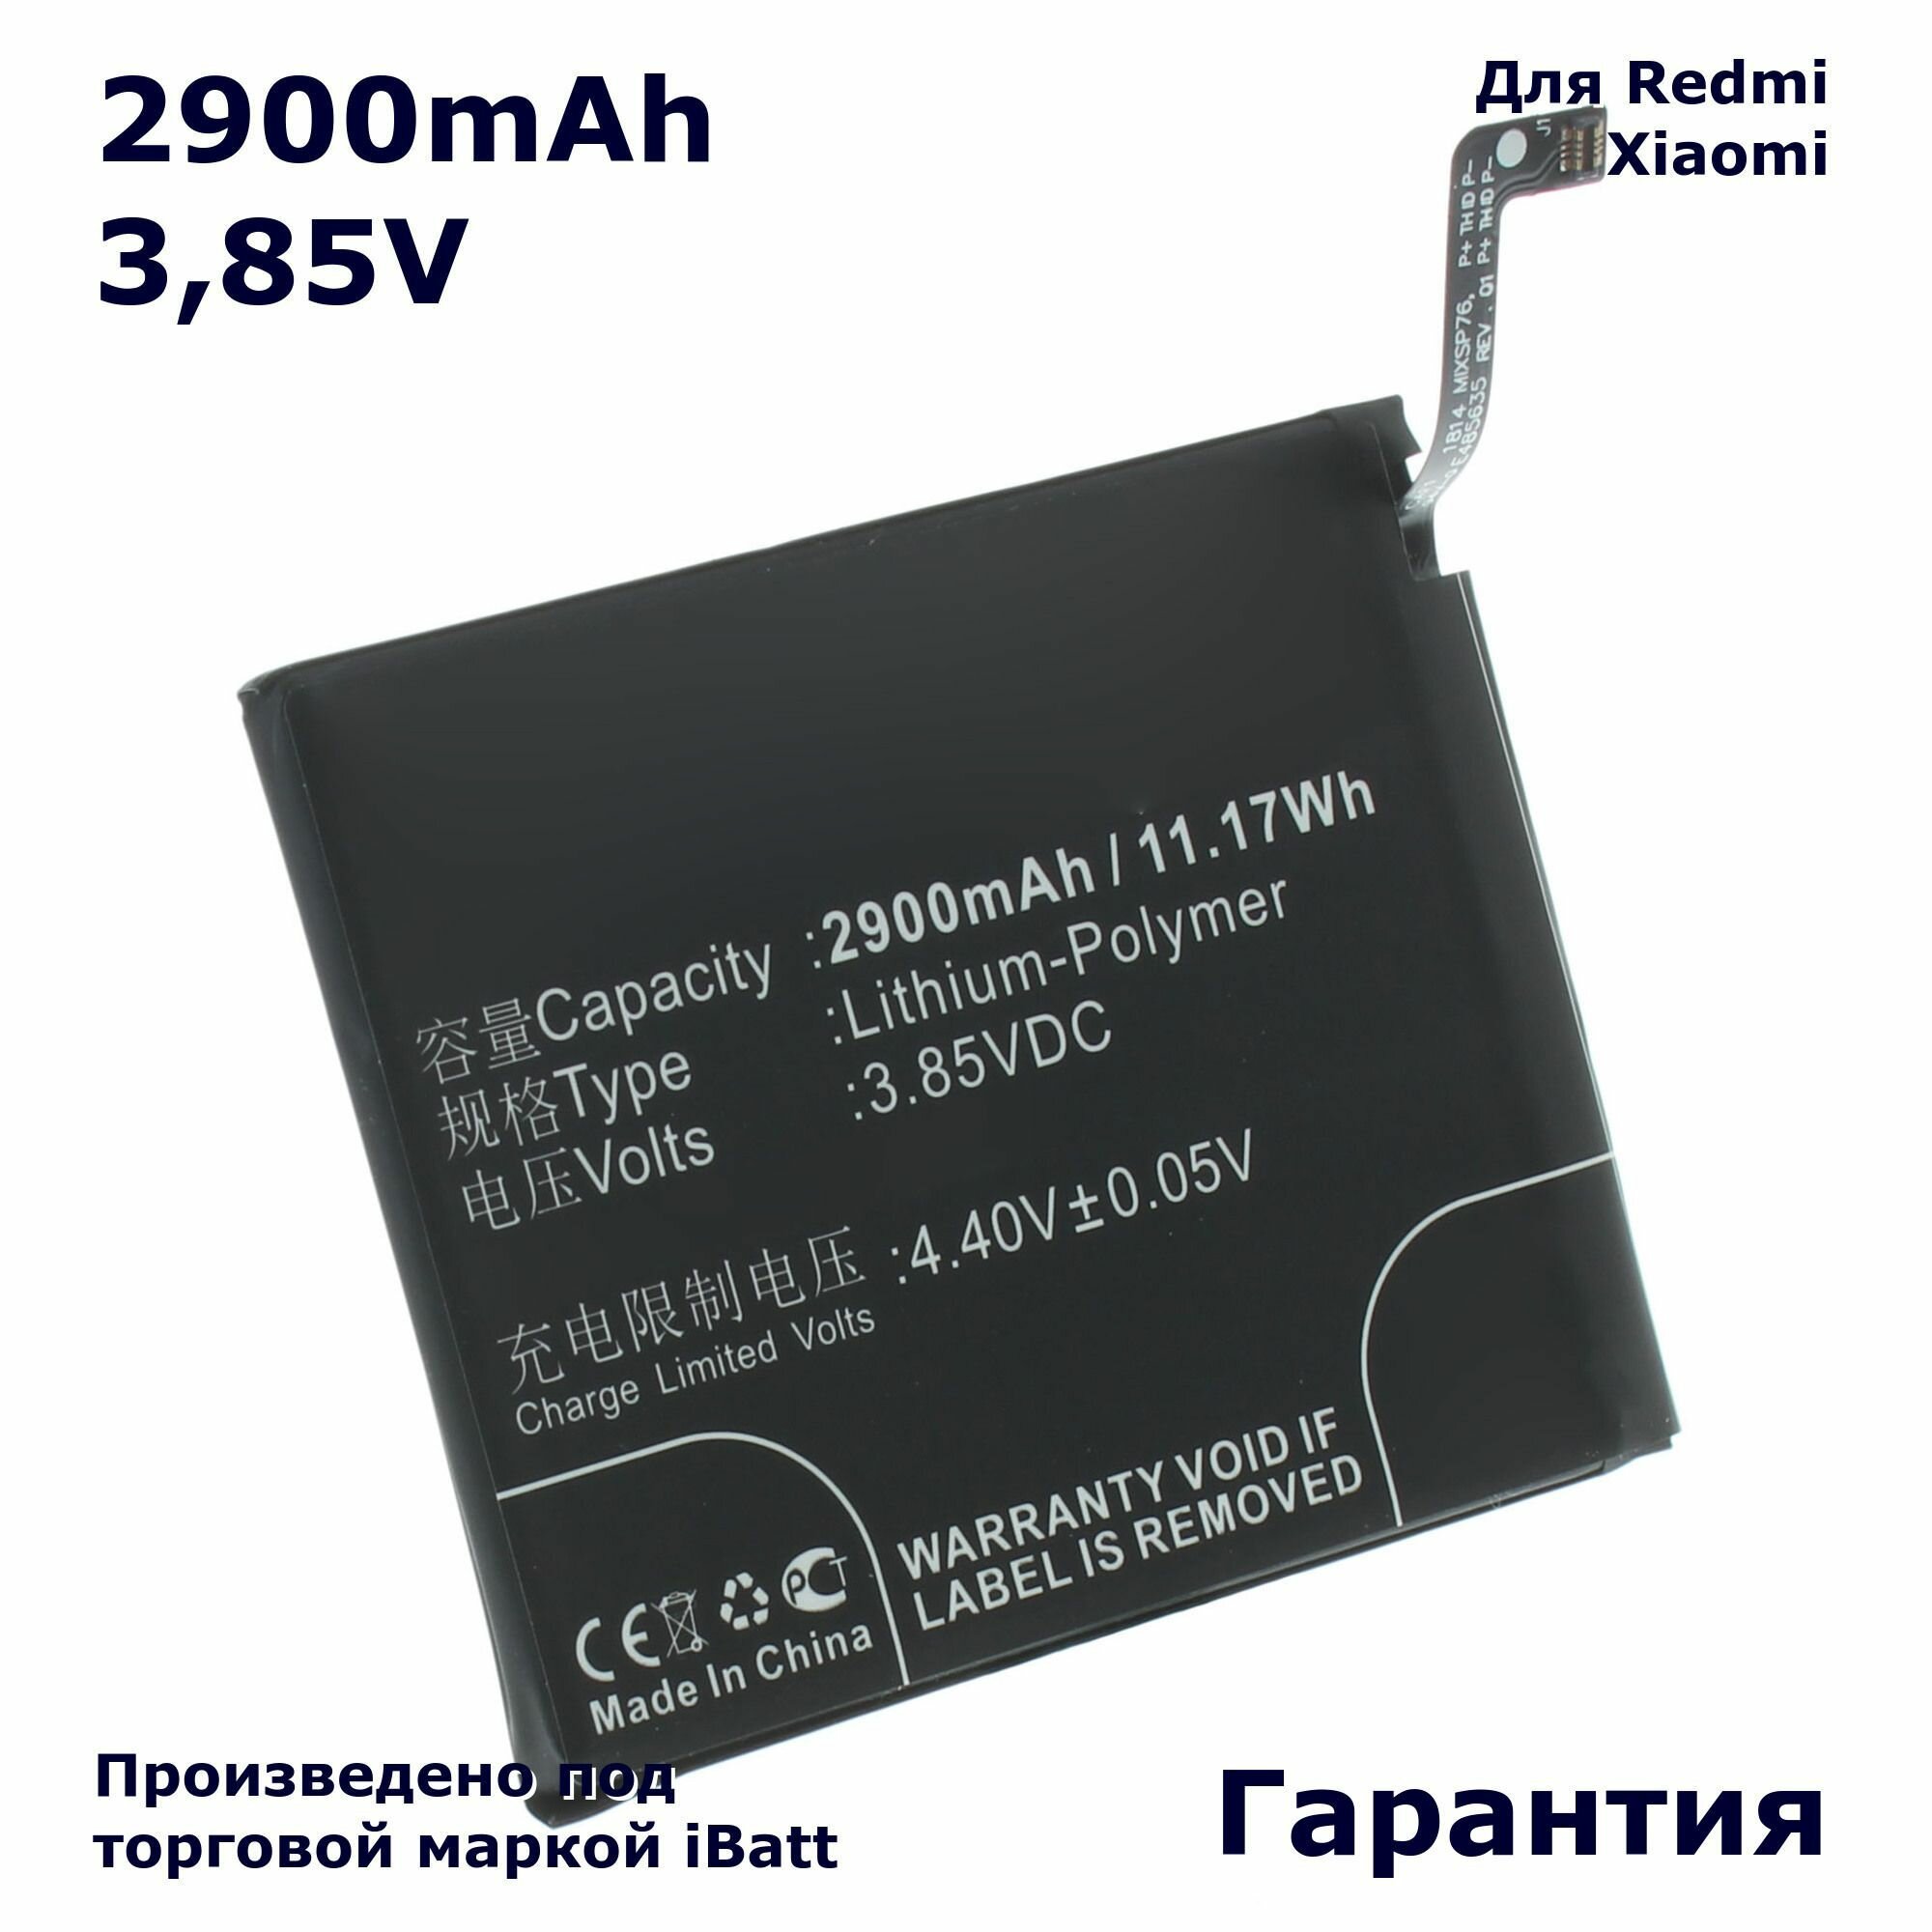 Аккумулятор iBatt 2900mAh 3,85V для Red BN37